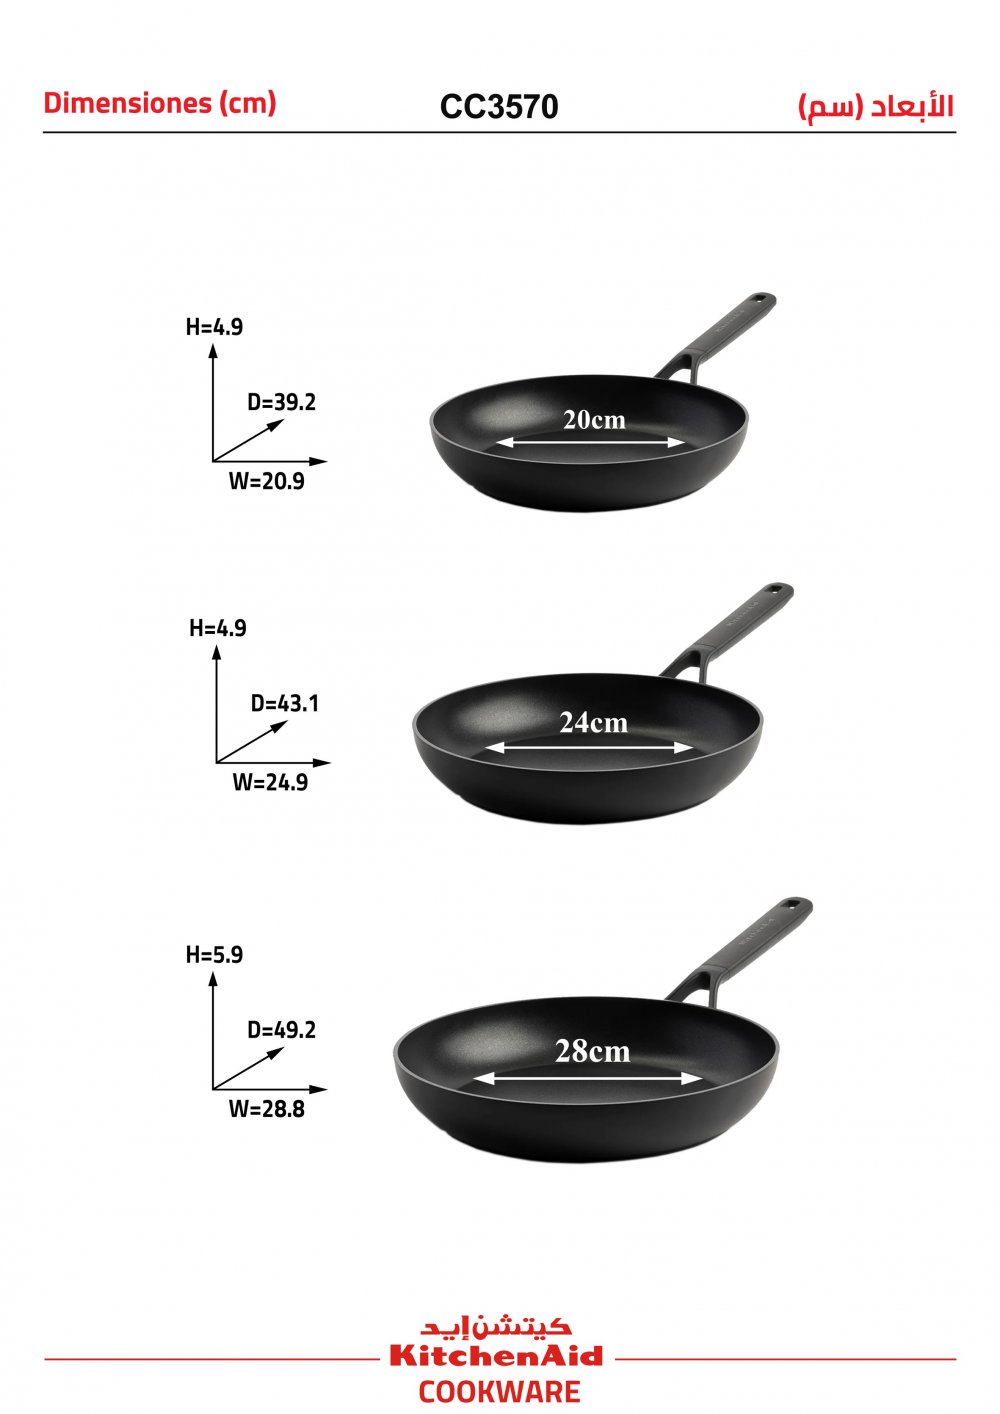 FRYING PAN SET ( 3 - PIECES ) DIAMETERS ( 20 + 24 + 28 CM )